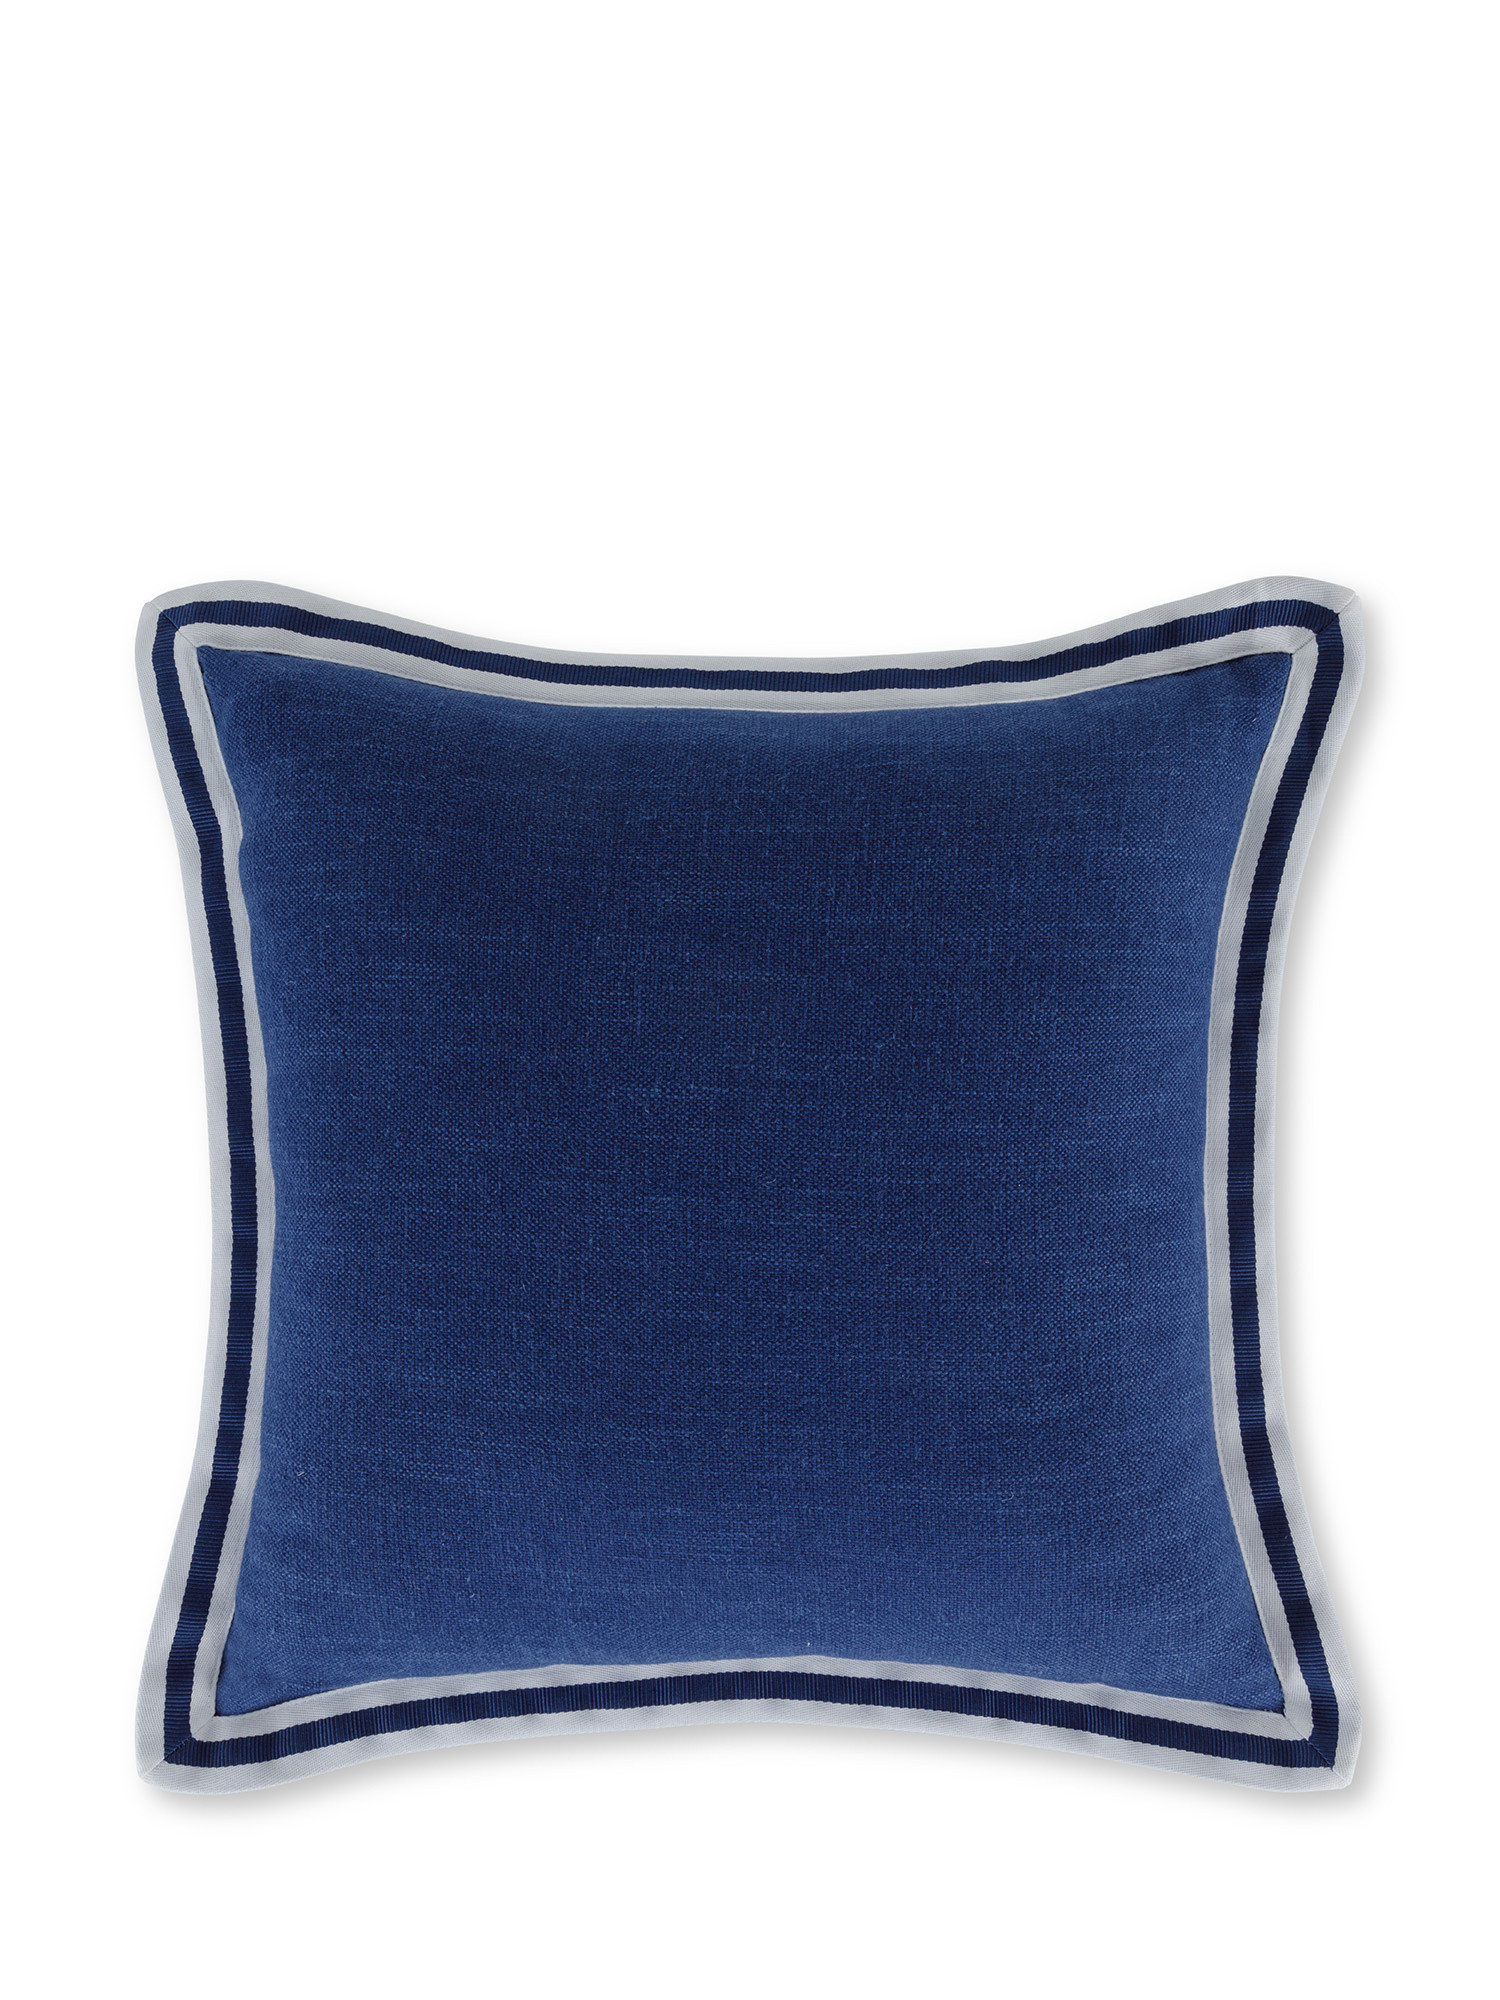 Cuscino con bordo rigato 45x45 cm, Blu, large image number 0